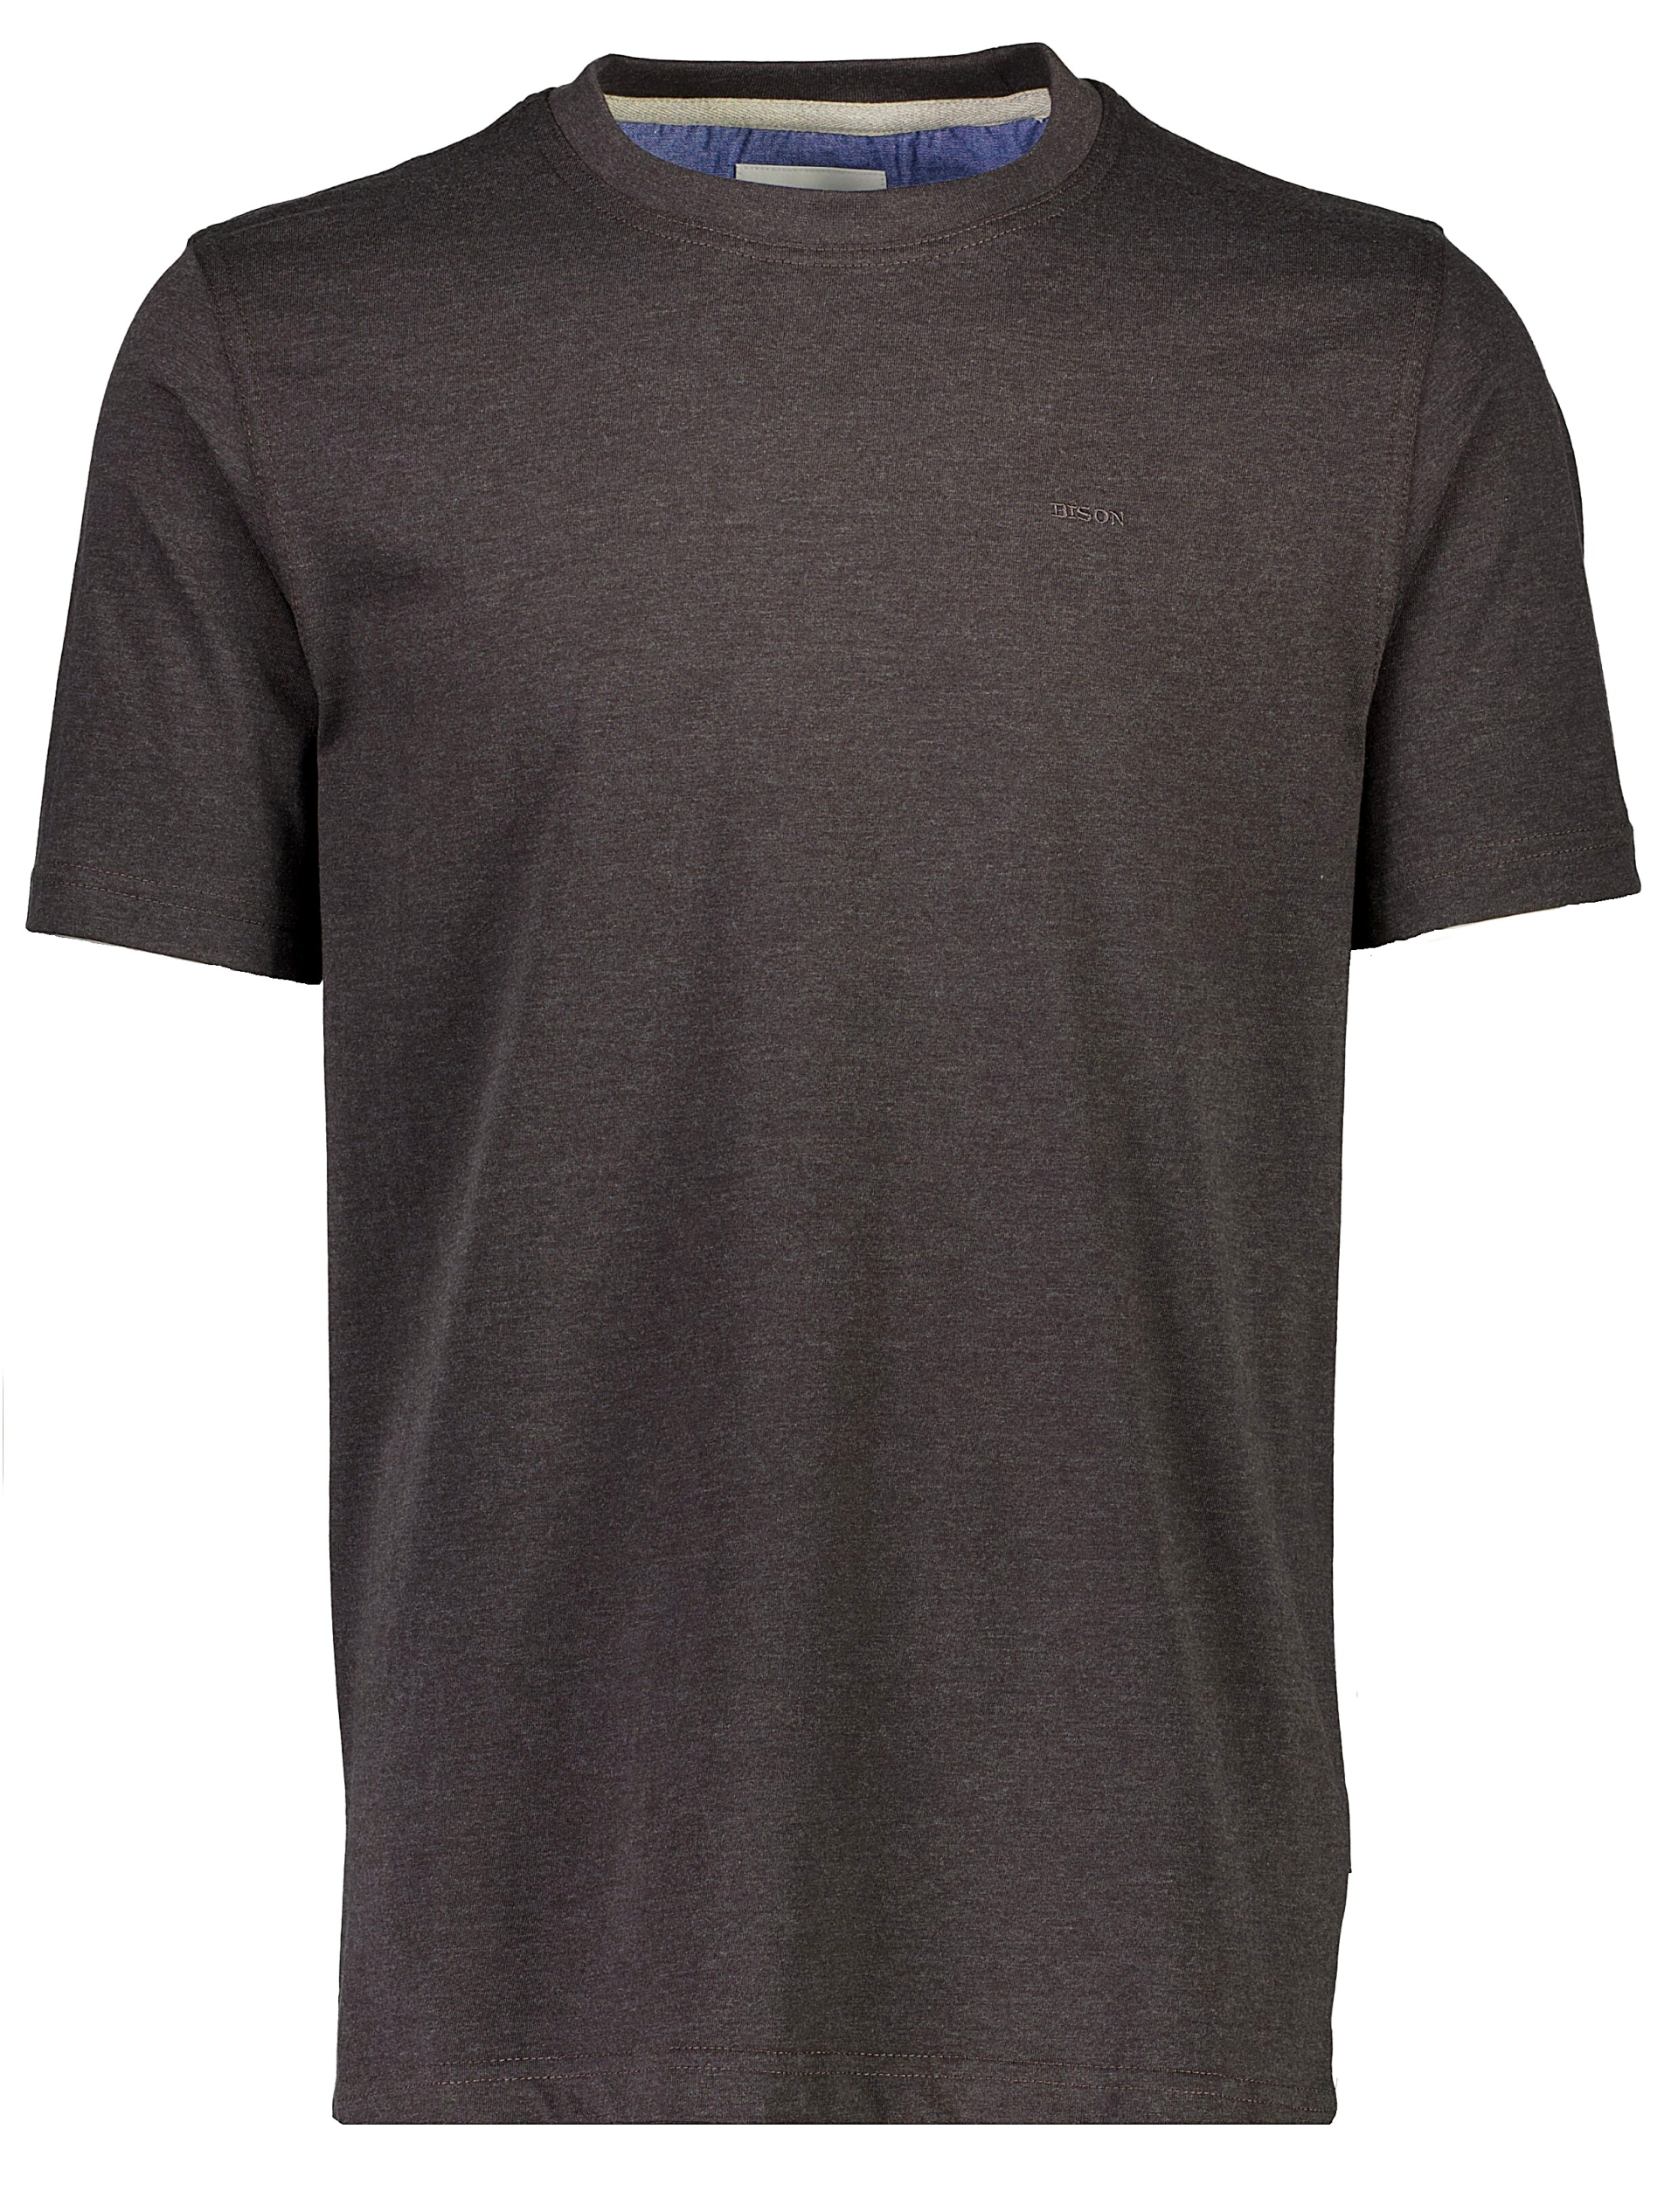 Bison T-shirt grå / charcoal mel